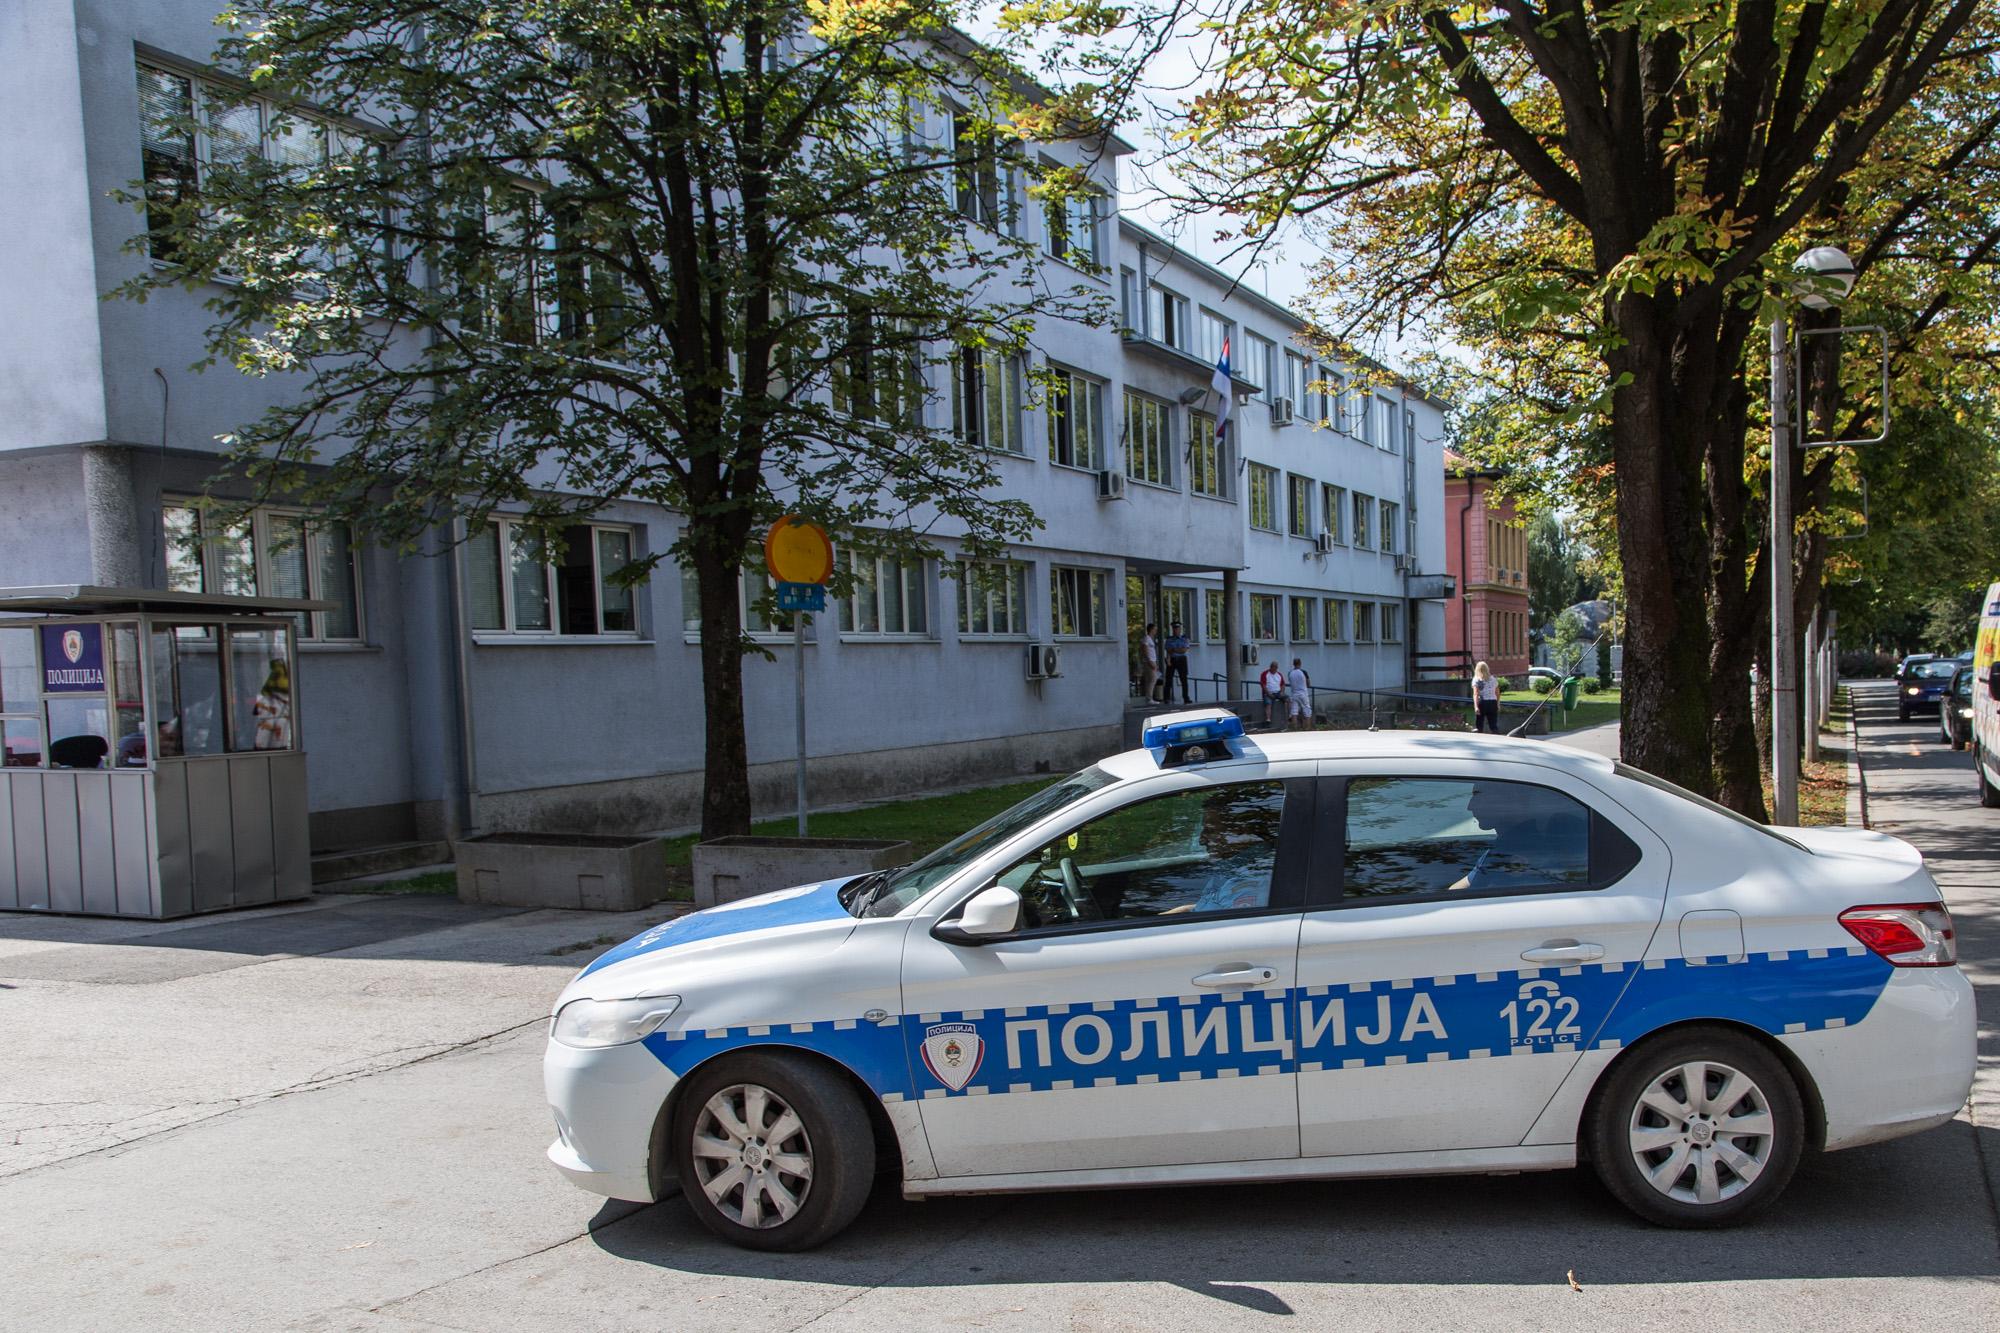 Državljanin Slovenije uhapšen prema Interpolovoj potjernici u Prijedoru